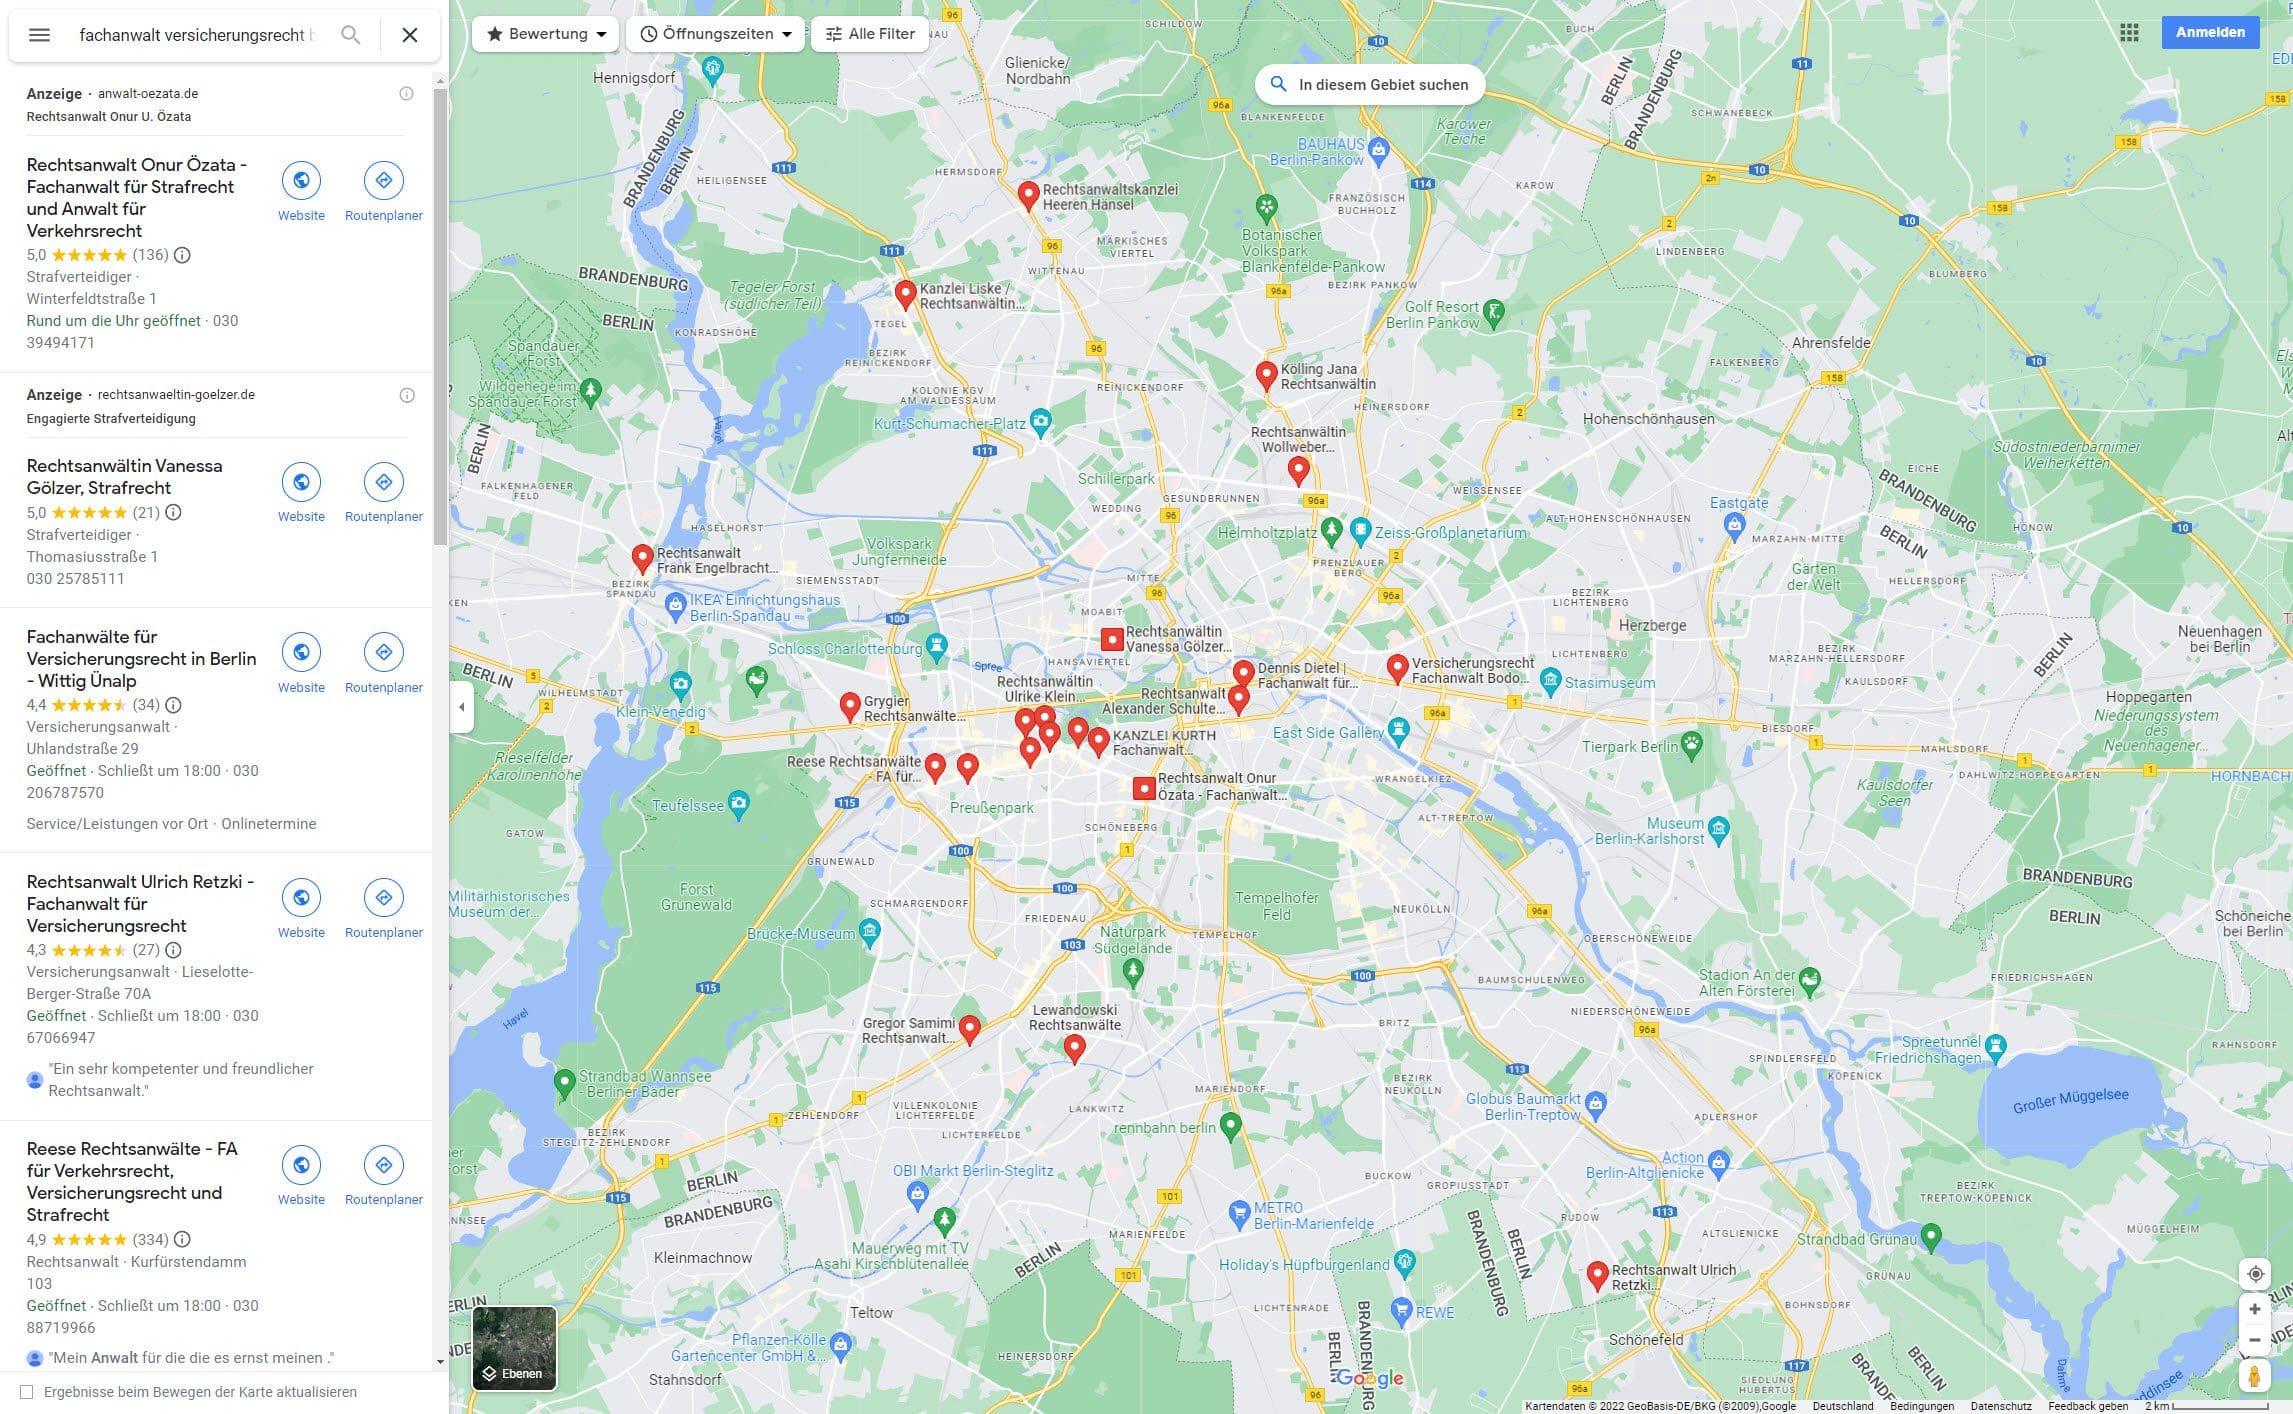 Anwalt für Versicherungsrecht in Berlin finden (Screenshot Google Suche nach "Fachanwalt Versicherungsrecht Berlin" am 22.08.2022)